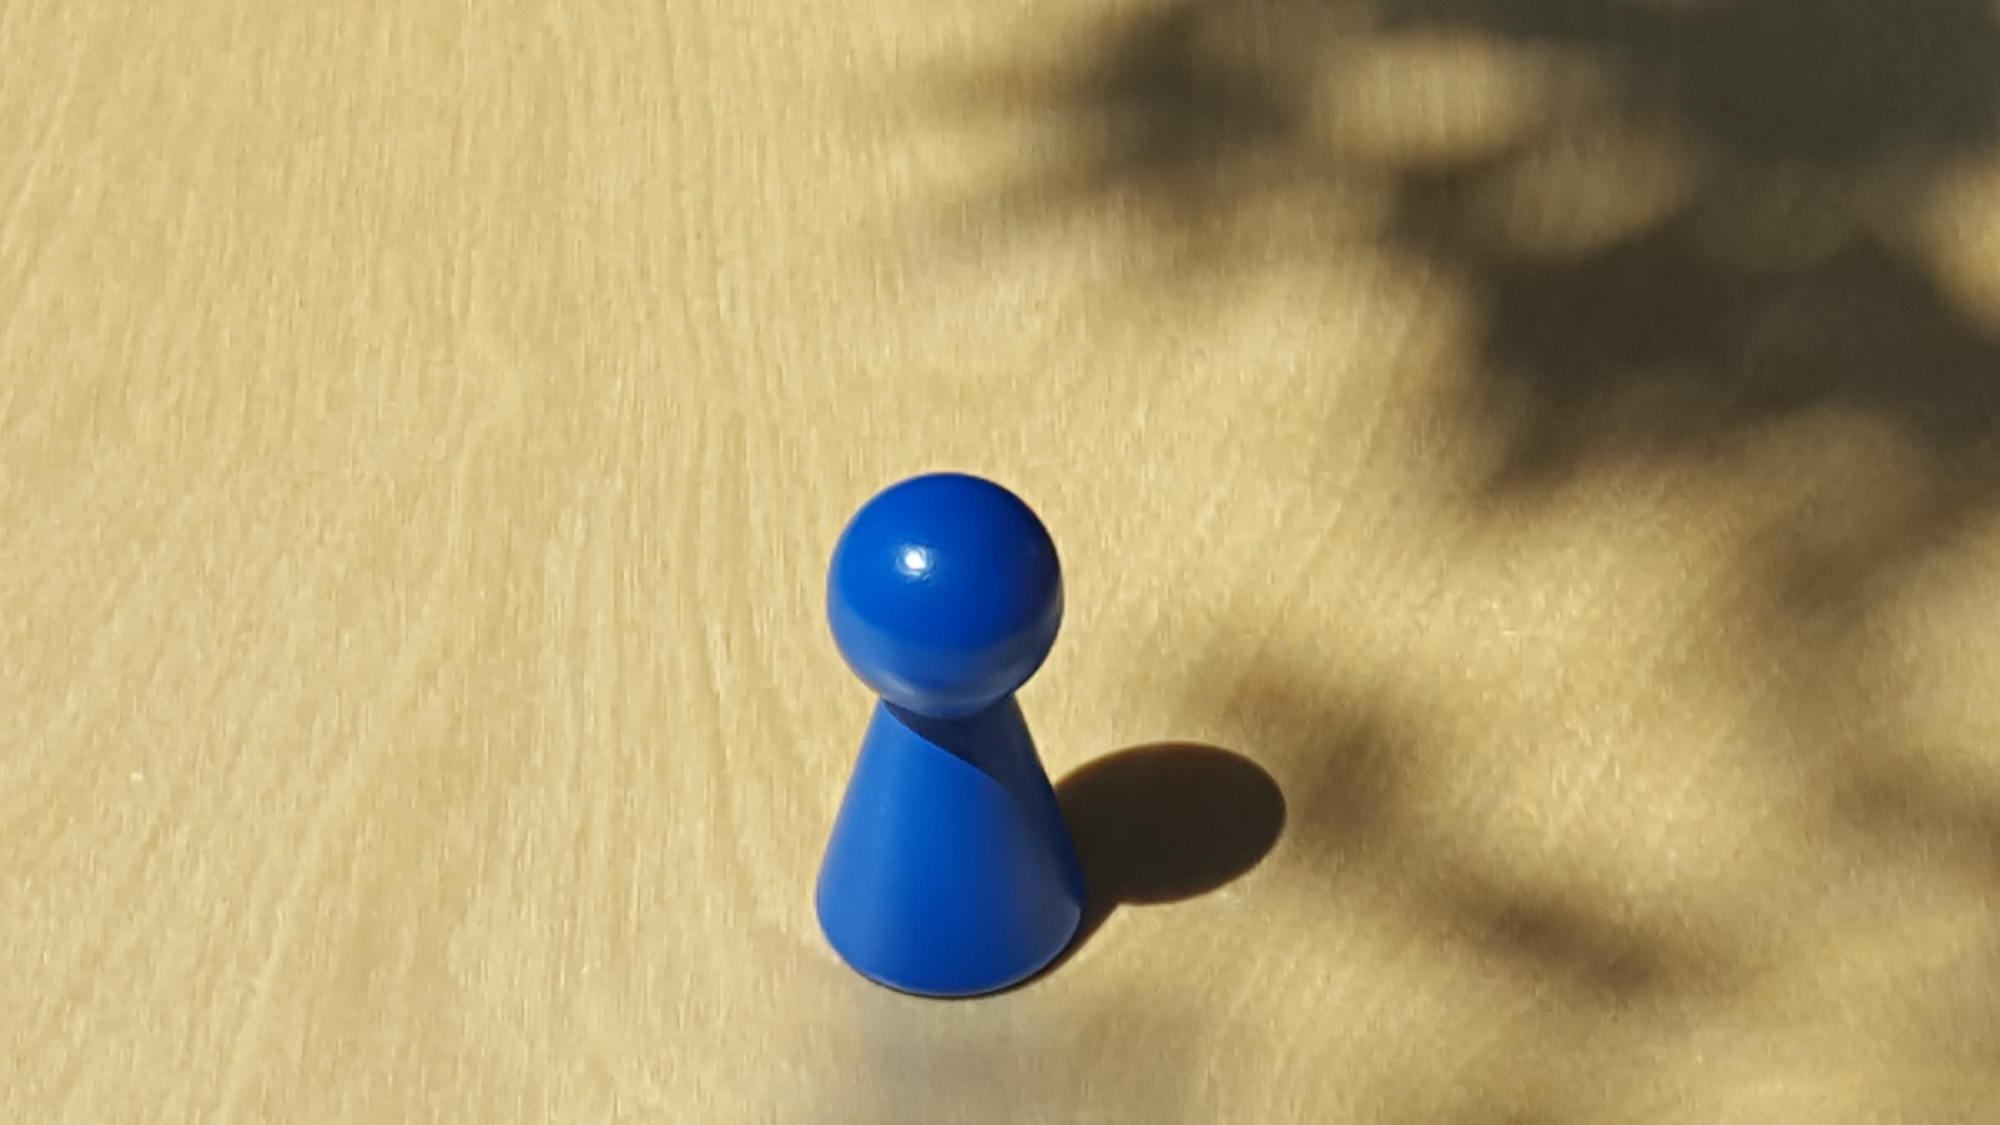 www.systembrett.at · Systembrett-Artikel · Einzel-Figur 6 cm in blau (ohne Augen);